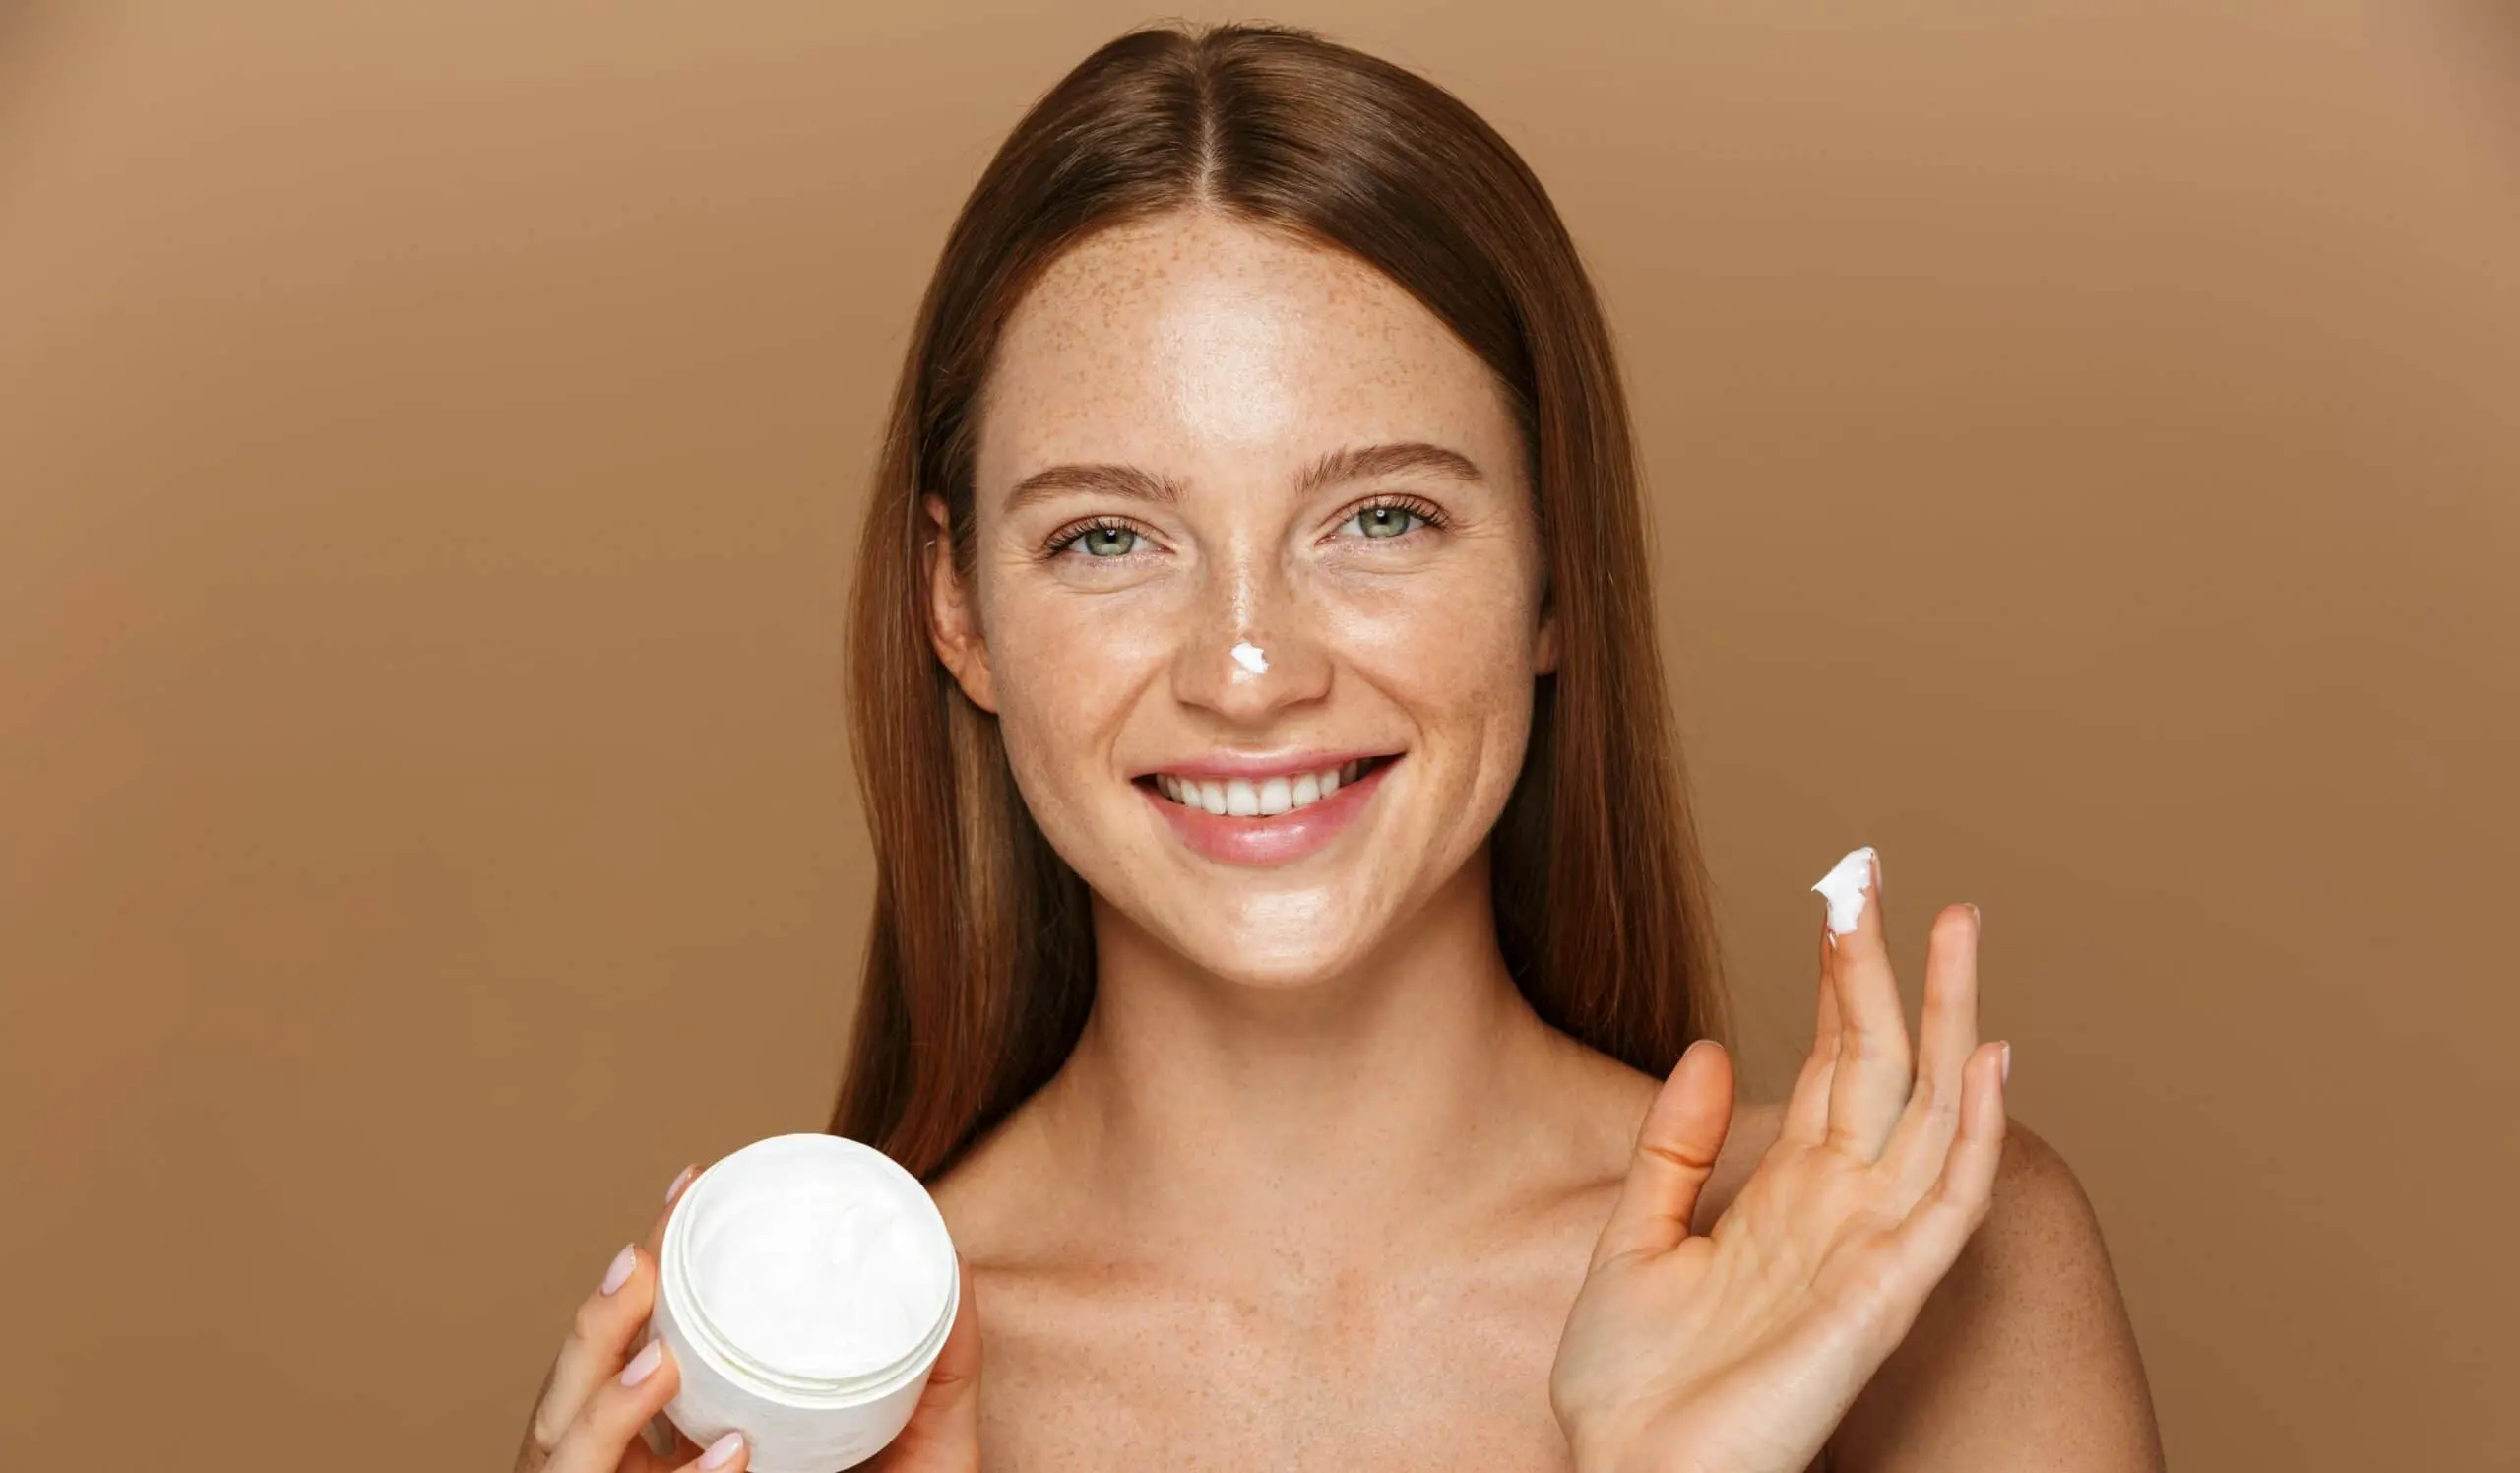 Comment choisir le bon soin hydratant ? – 4 problèmes de peau